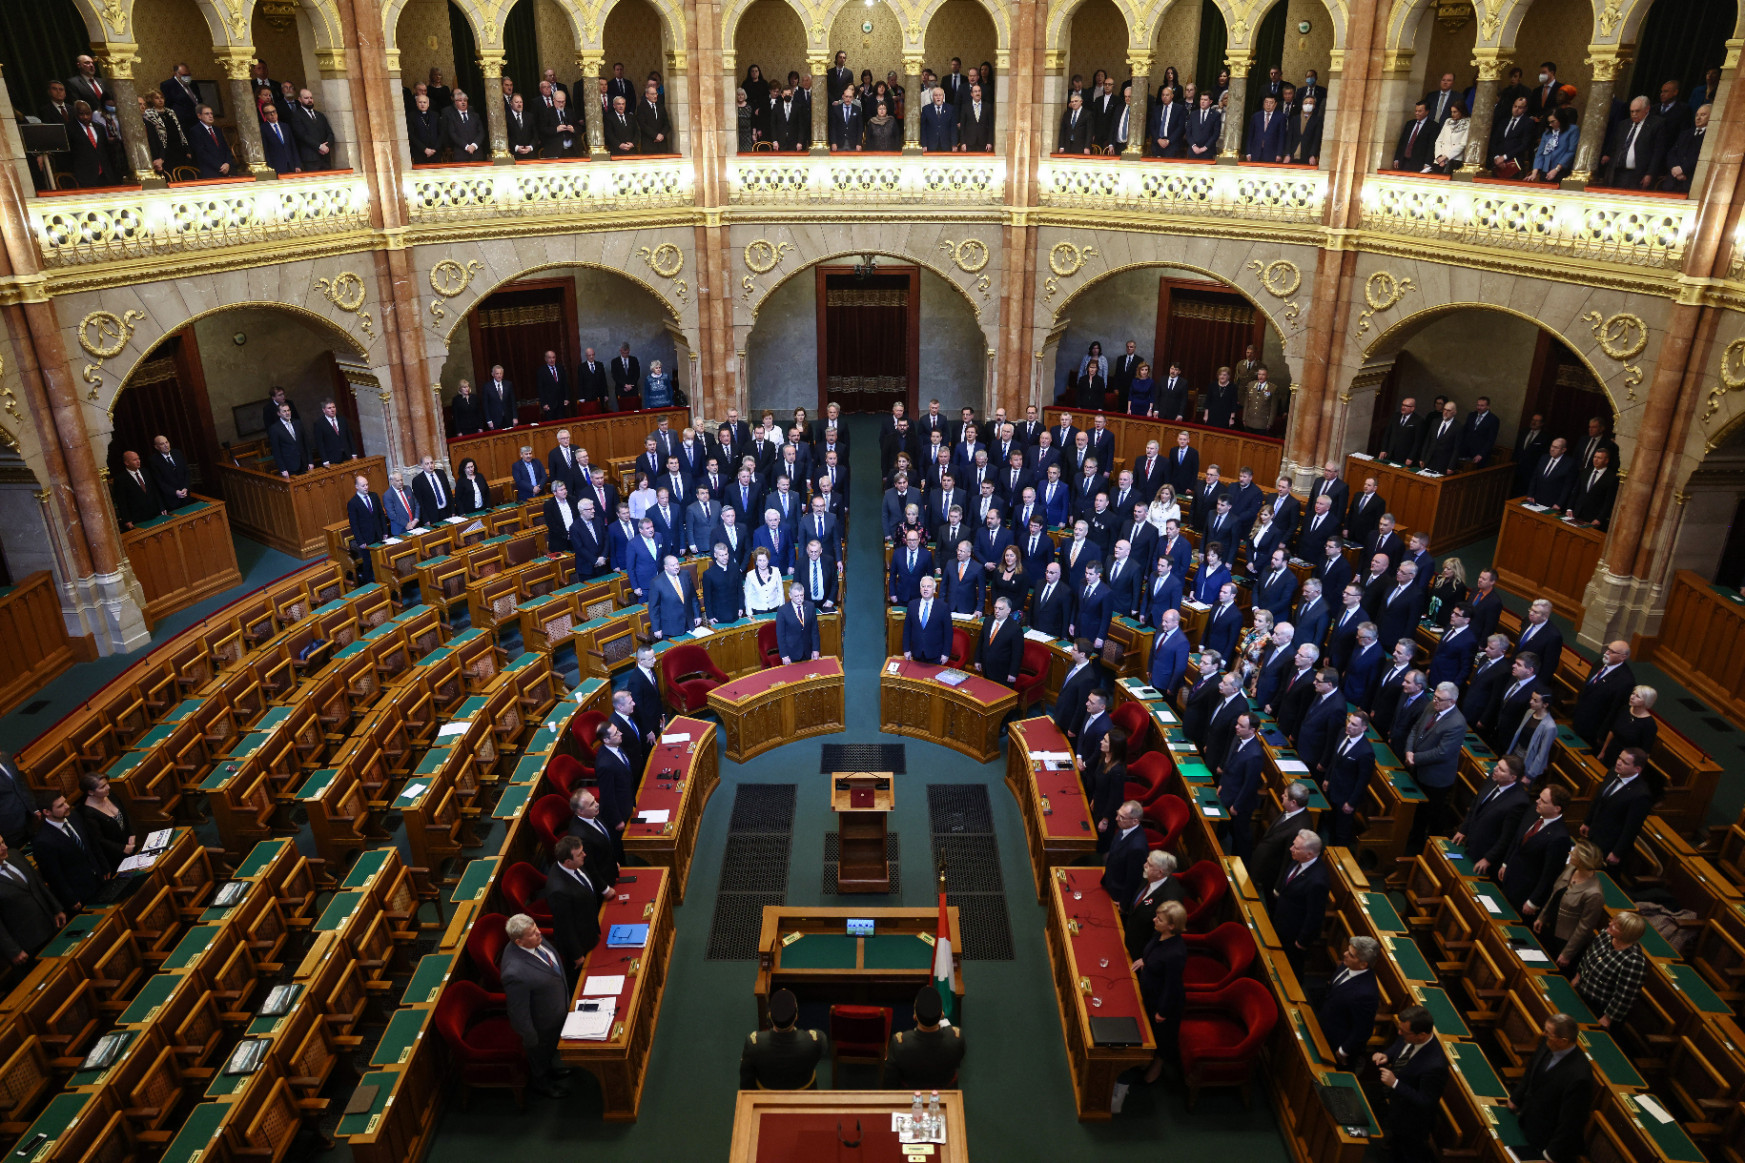 Átveszik a mandátumot az ellenzéki képviselõk, de még nem tudják, mit csinálnak a parlamentben